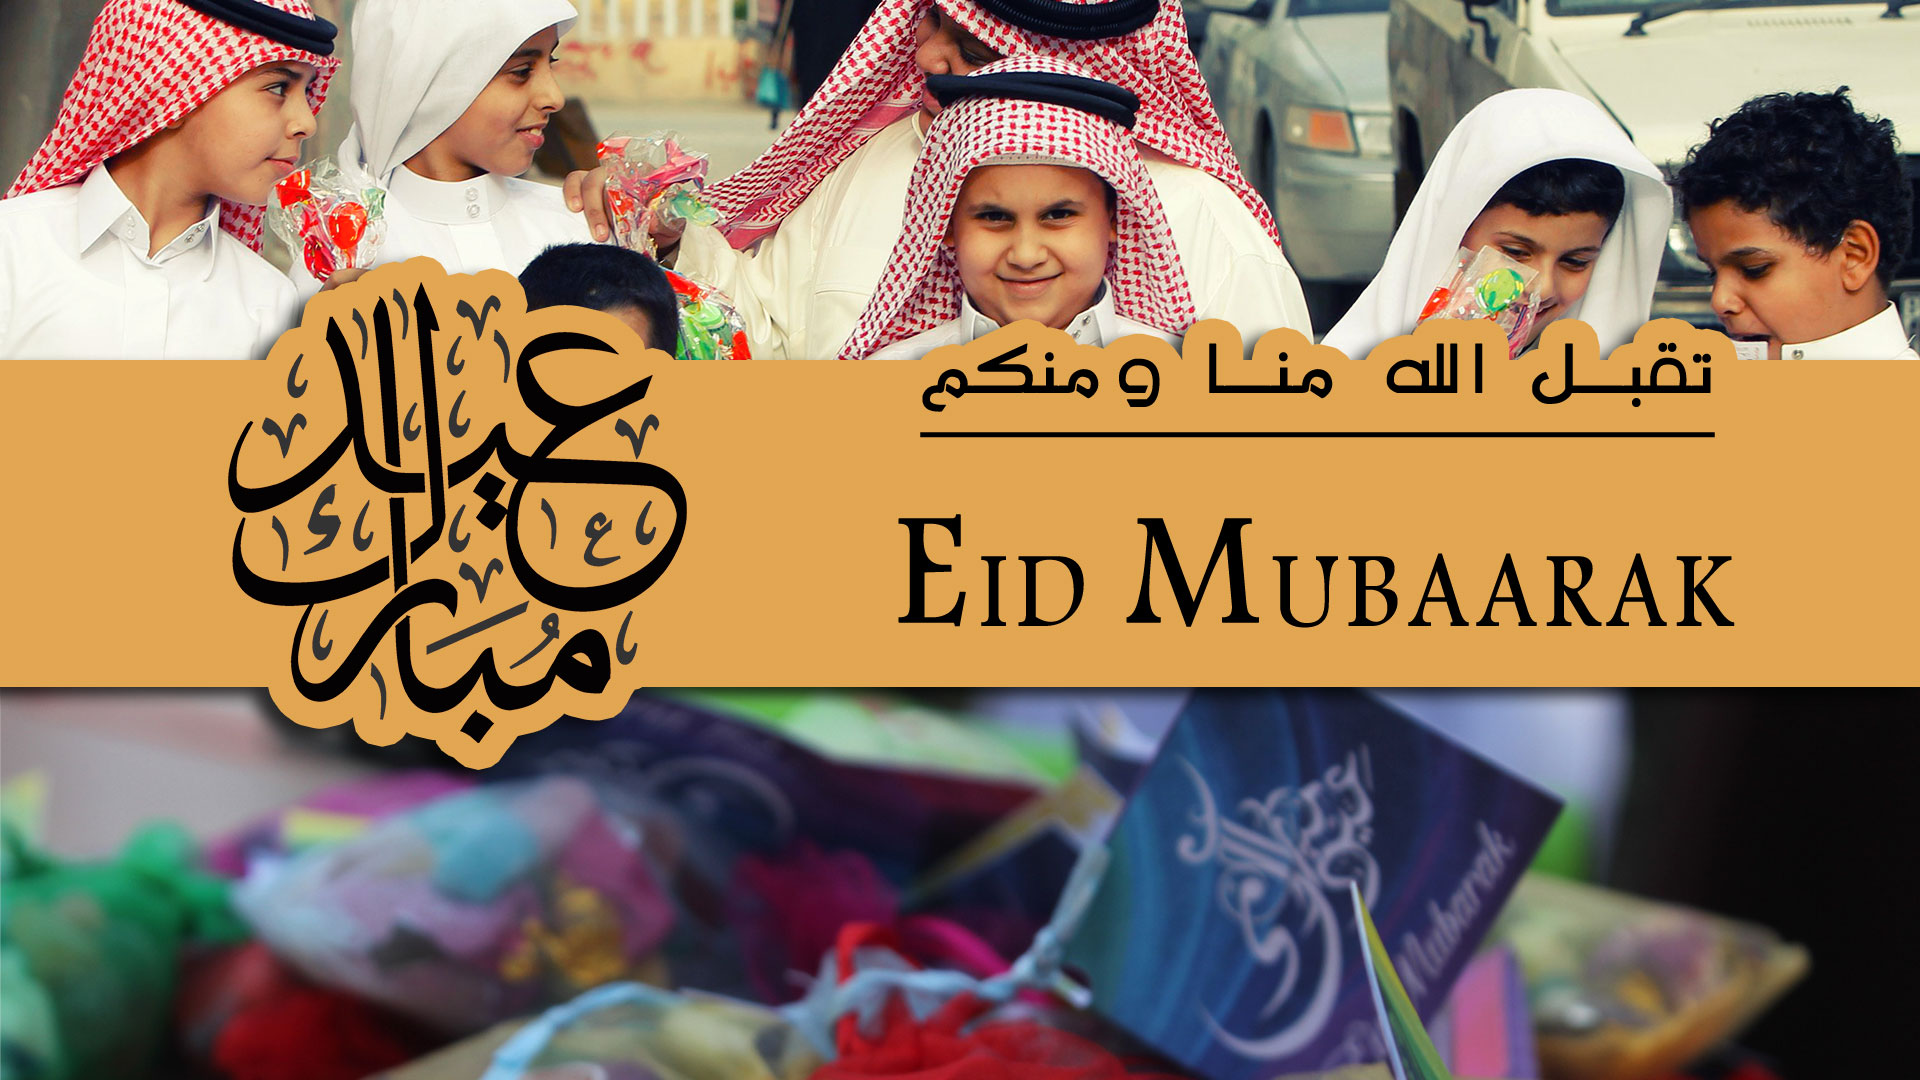 Eid-ul-Fitr 2019 1440 announcement